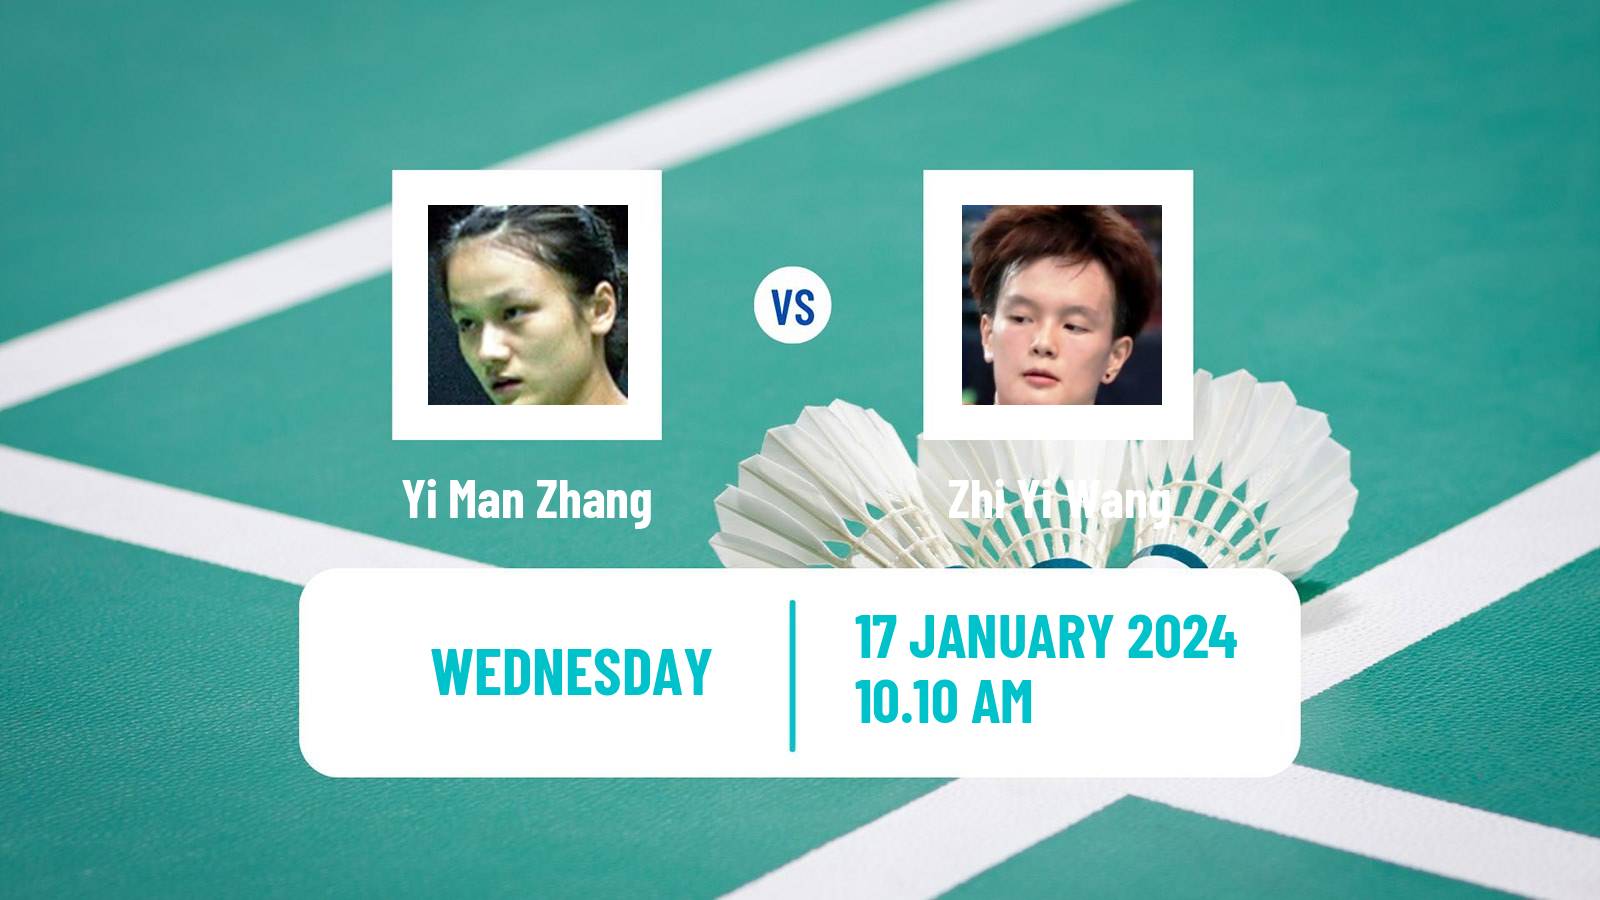 Badminton BWF World Tour India Open Women Yi Man Zhang - Zhi Yi Wang